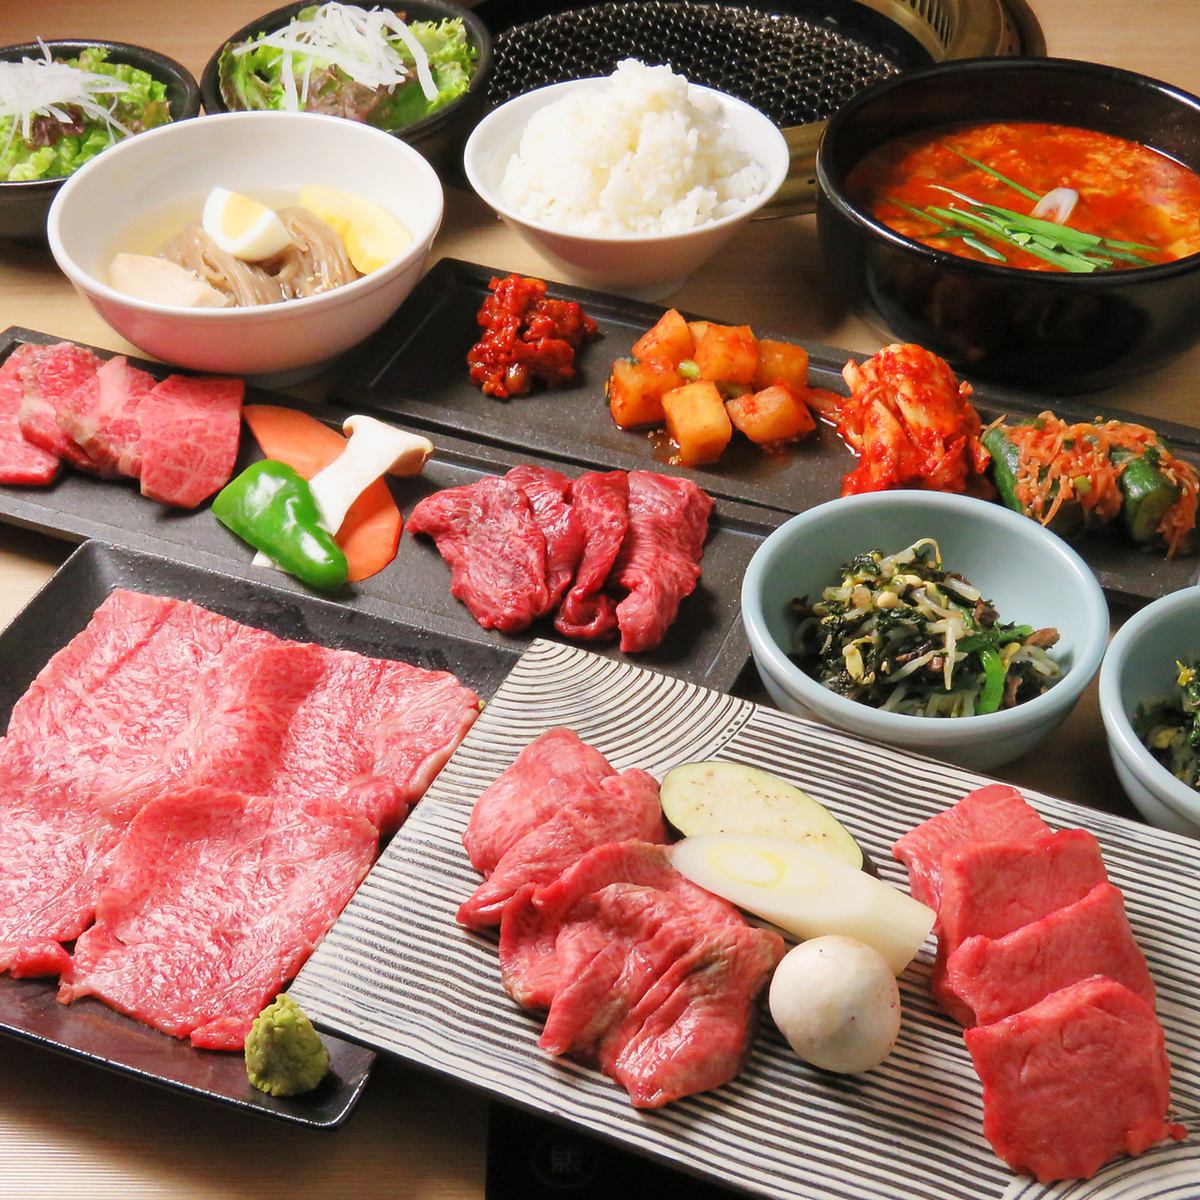 ≪有包廂≫請盡情享受我們引以自豪的日本牛肉!請享用我們精美的烤肉。